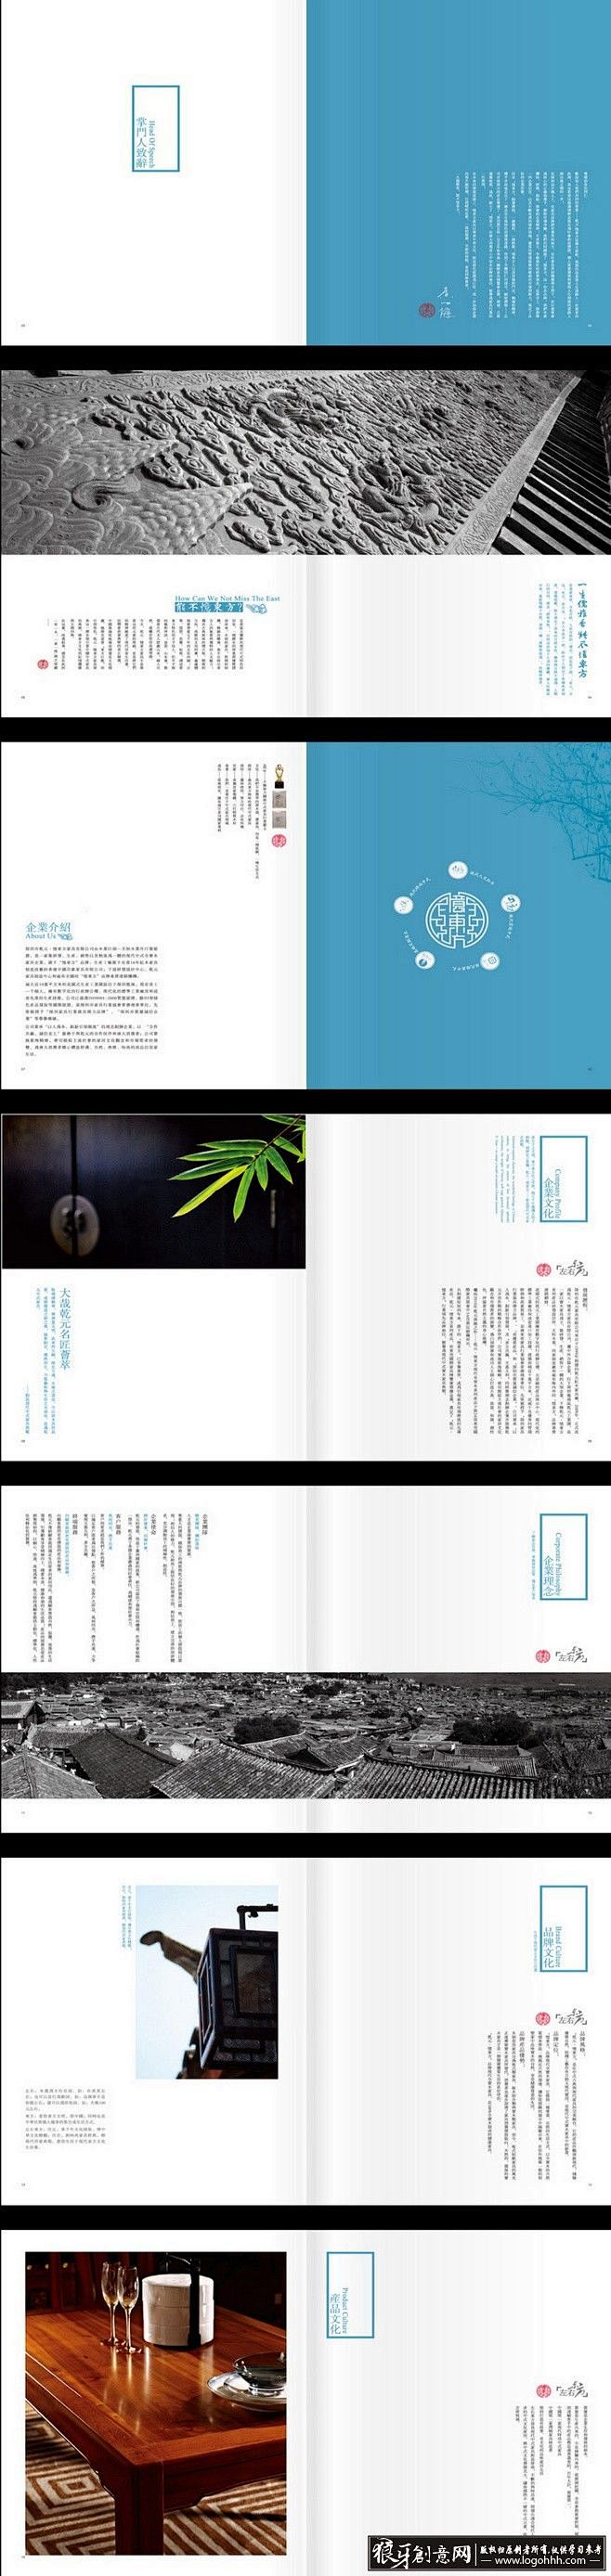 创意画册 时尚中式家具画册 高档画册设计...